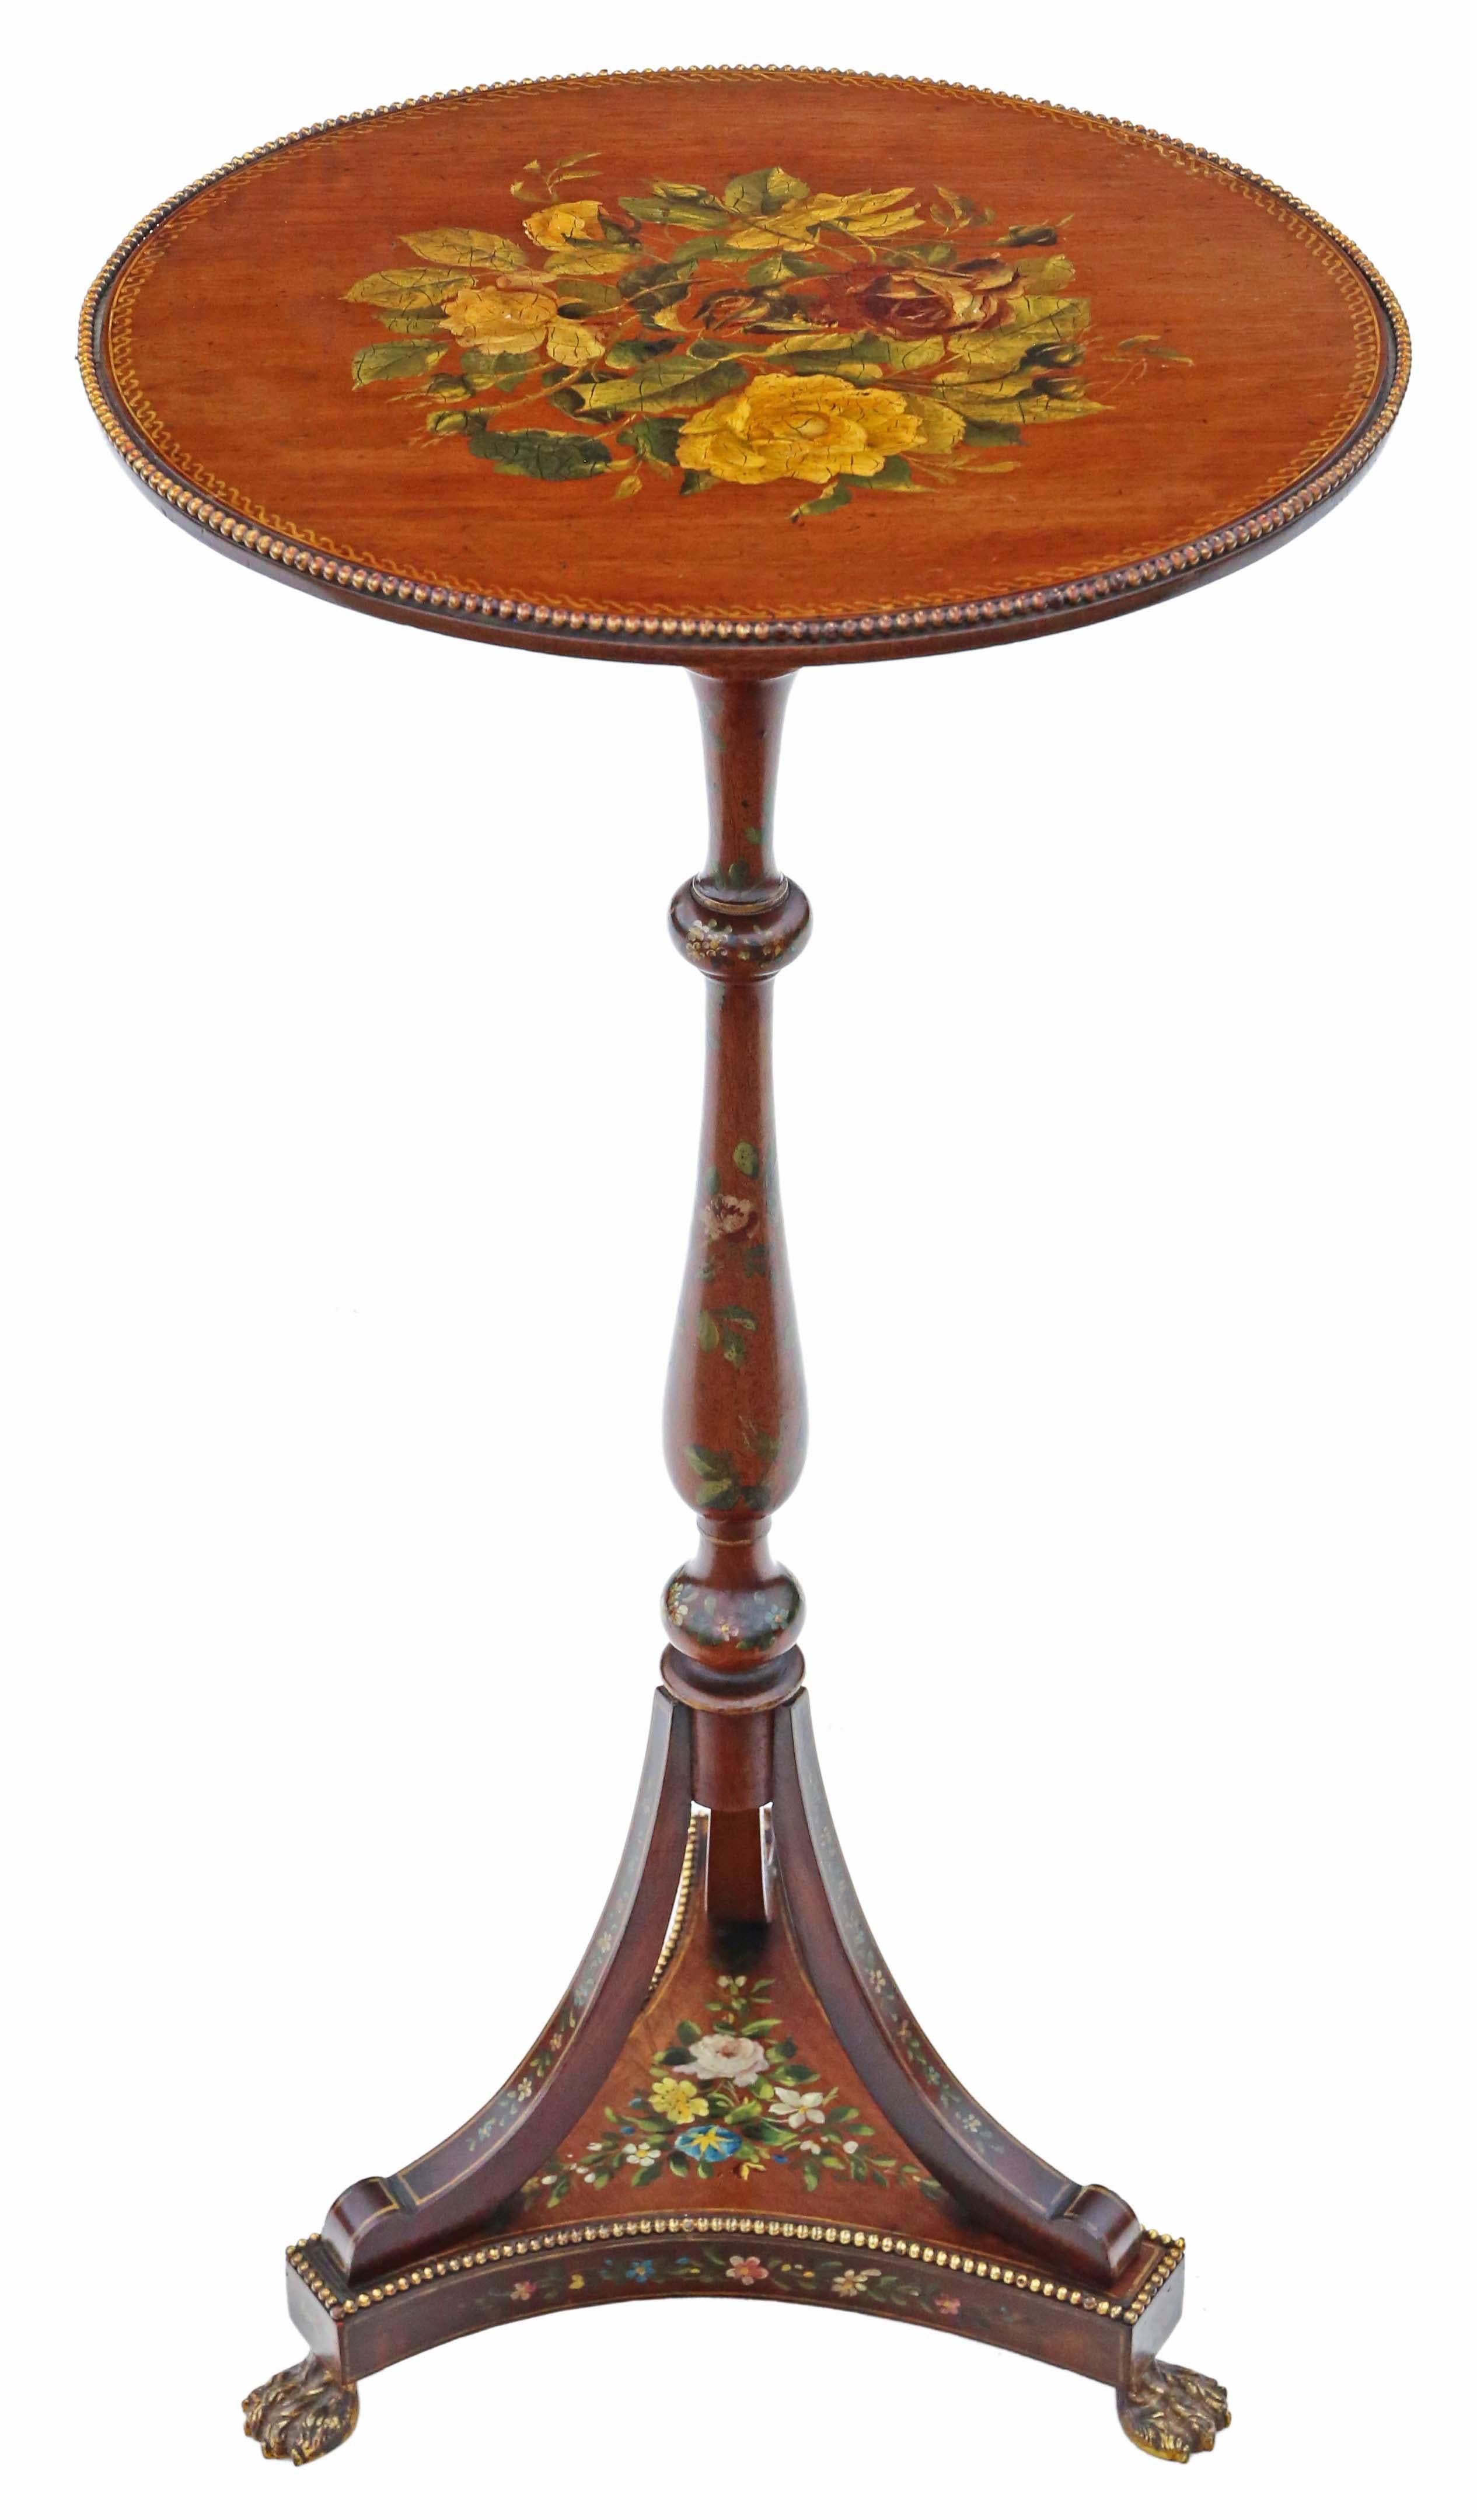 Antike 19. Jahrhundert Exemplar Qualität Hand dekoriert Wein Seite oder Beistelltisch.

Dies ist ein schöner Tisch, der Qualität ausstrahlt, mit attraktivem Ormolu-Messingdekor und schöner Handverzierung.

Sehr selten und attraktiv.

Der Tisch hat